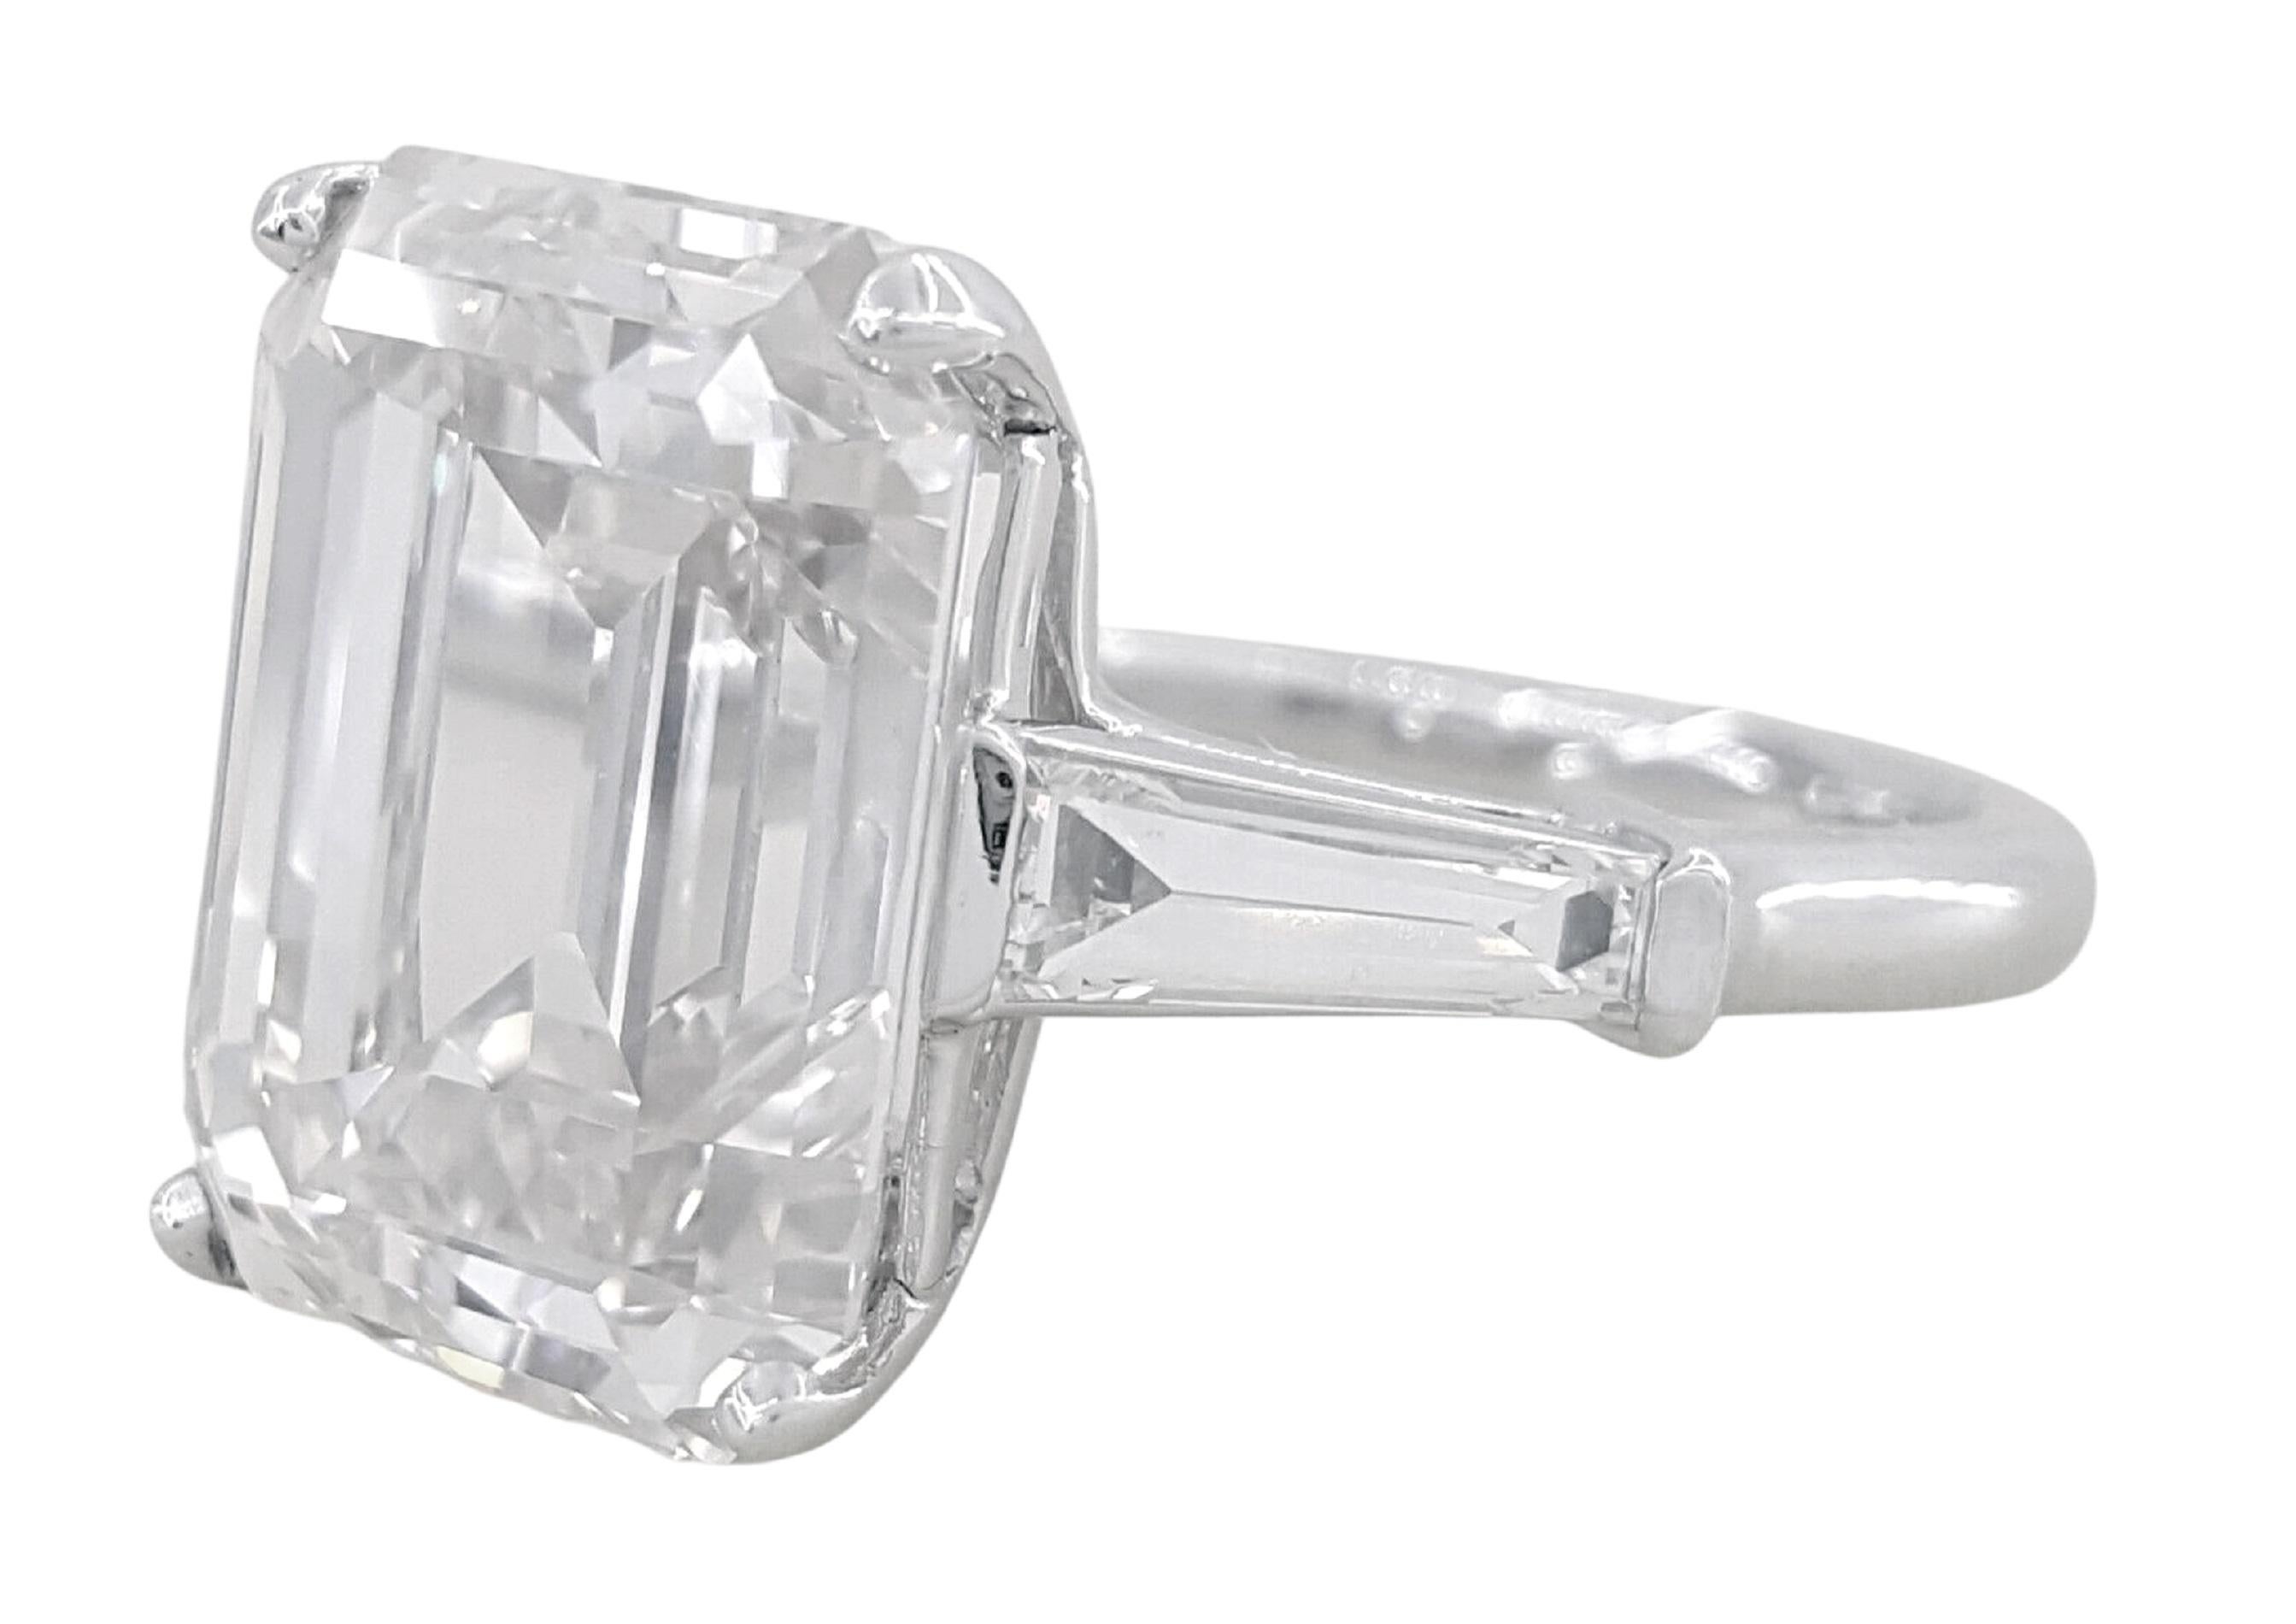 Ein exquisiter 4-Karäter 
Diamant im Smaragdschliff
Innerlich einwandfreie Klarheit
d Farbe
ausgezeichnete Politur
ausgezeichnete Symmetrie keine Fluoreszenz